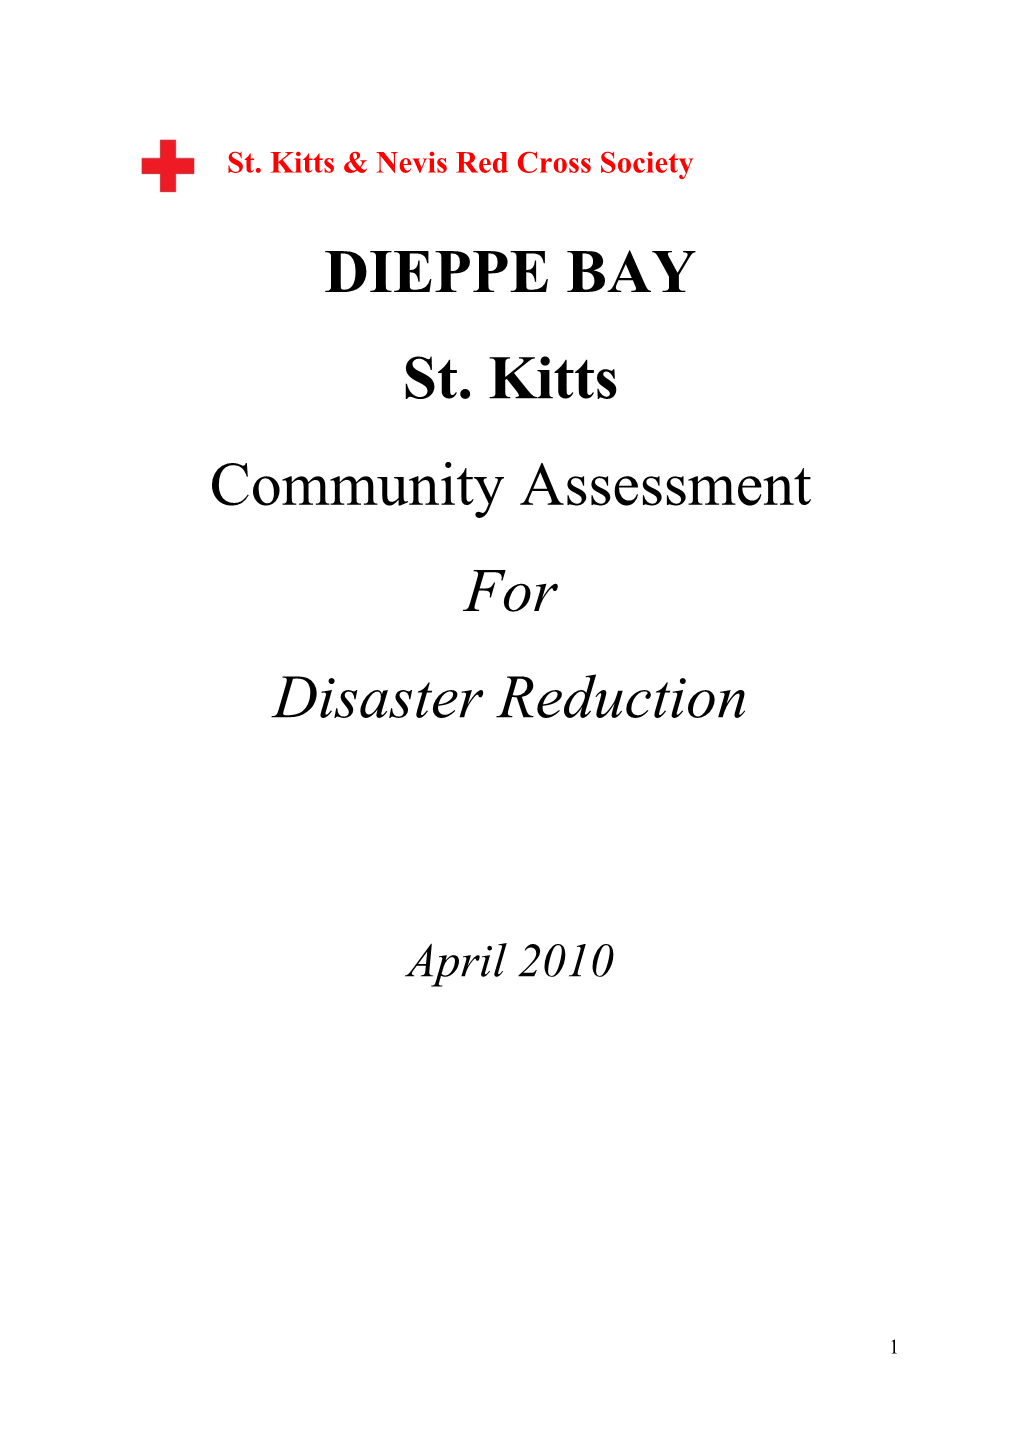 DIEPPE BAY St. Kitts Community Assessment for Disaster Reduction